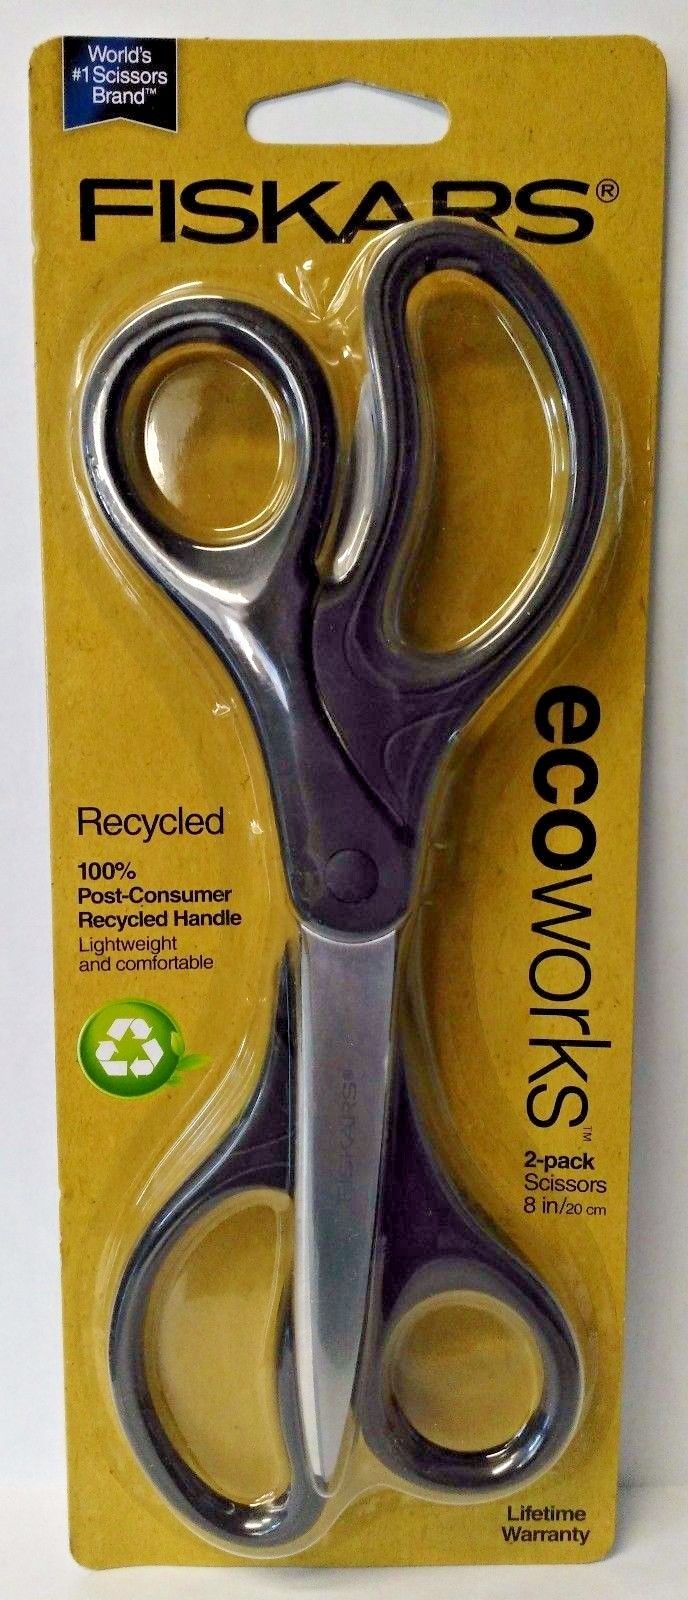 Fiskars 01-005086J 8" Recycled Scissors 2-Pack